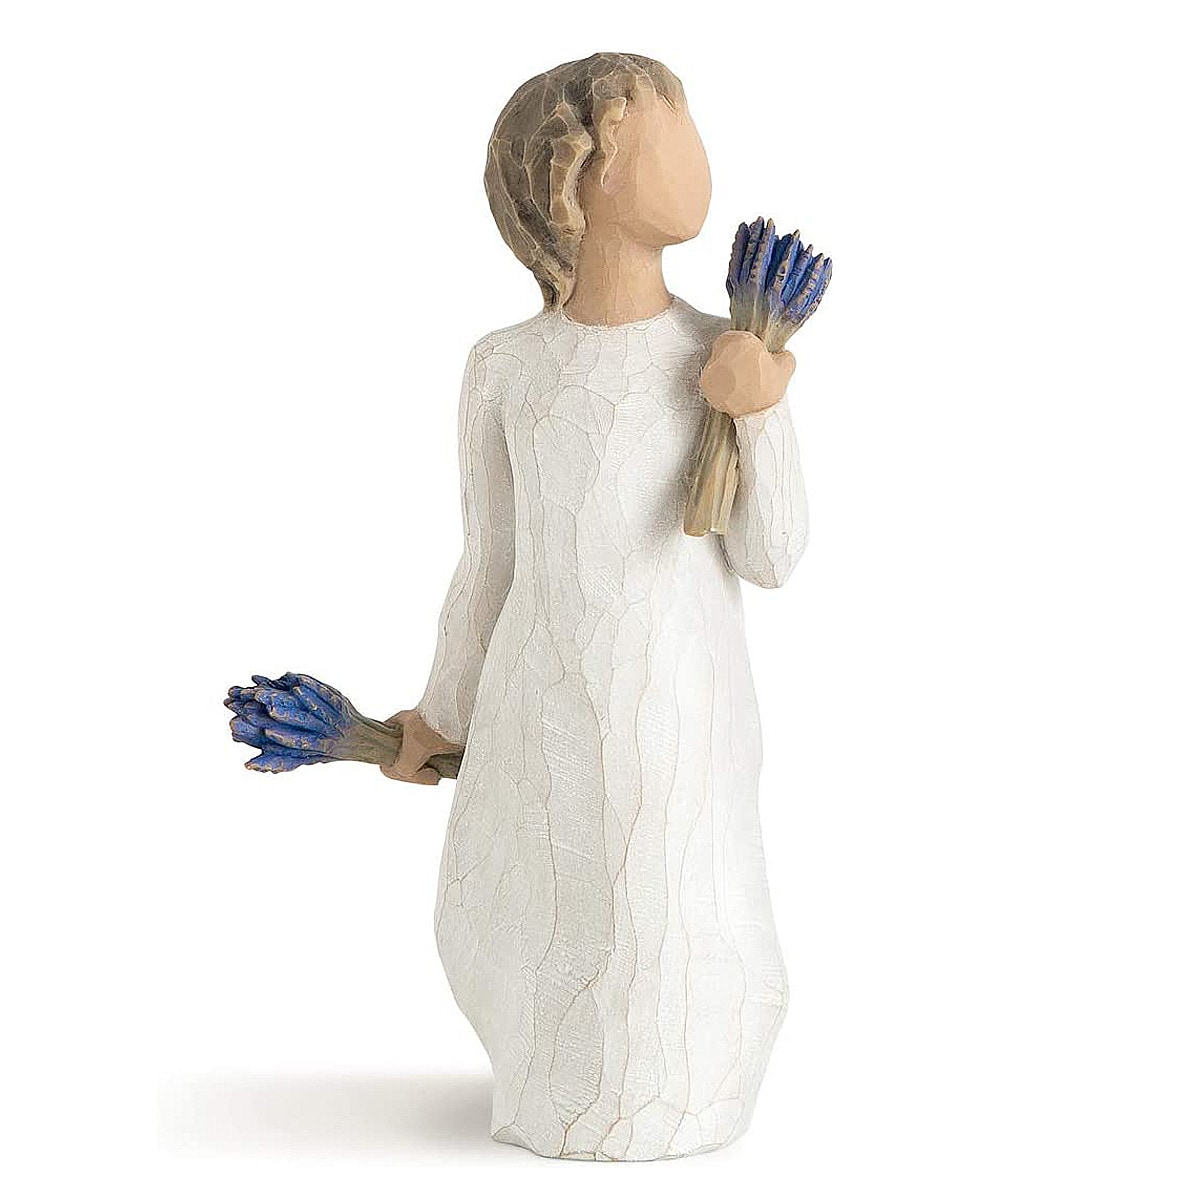 ウィローツリー 置物 人形 フィギュア 26465 あなたのすべての感覚が癒しの恵みで満たされますように Lavender Grace 花 女の子 メッセージングプレゼント